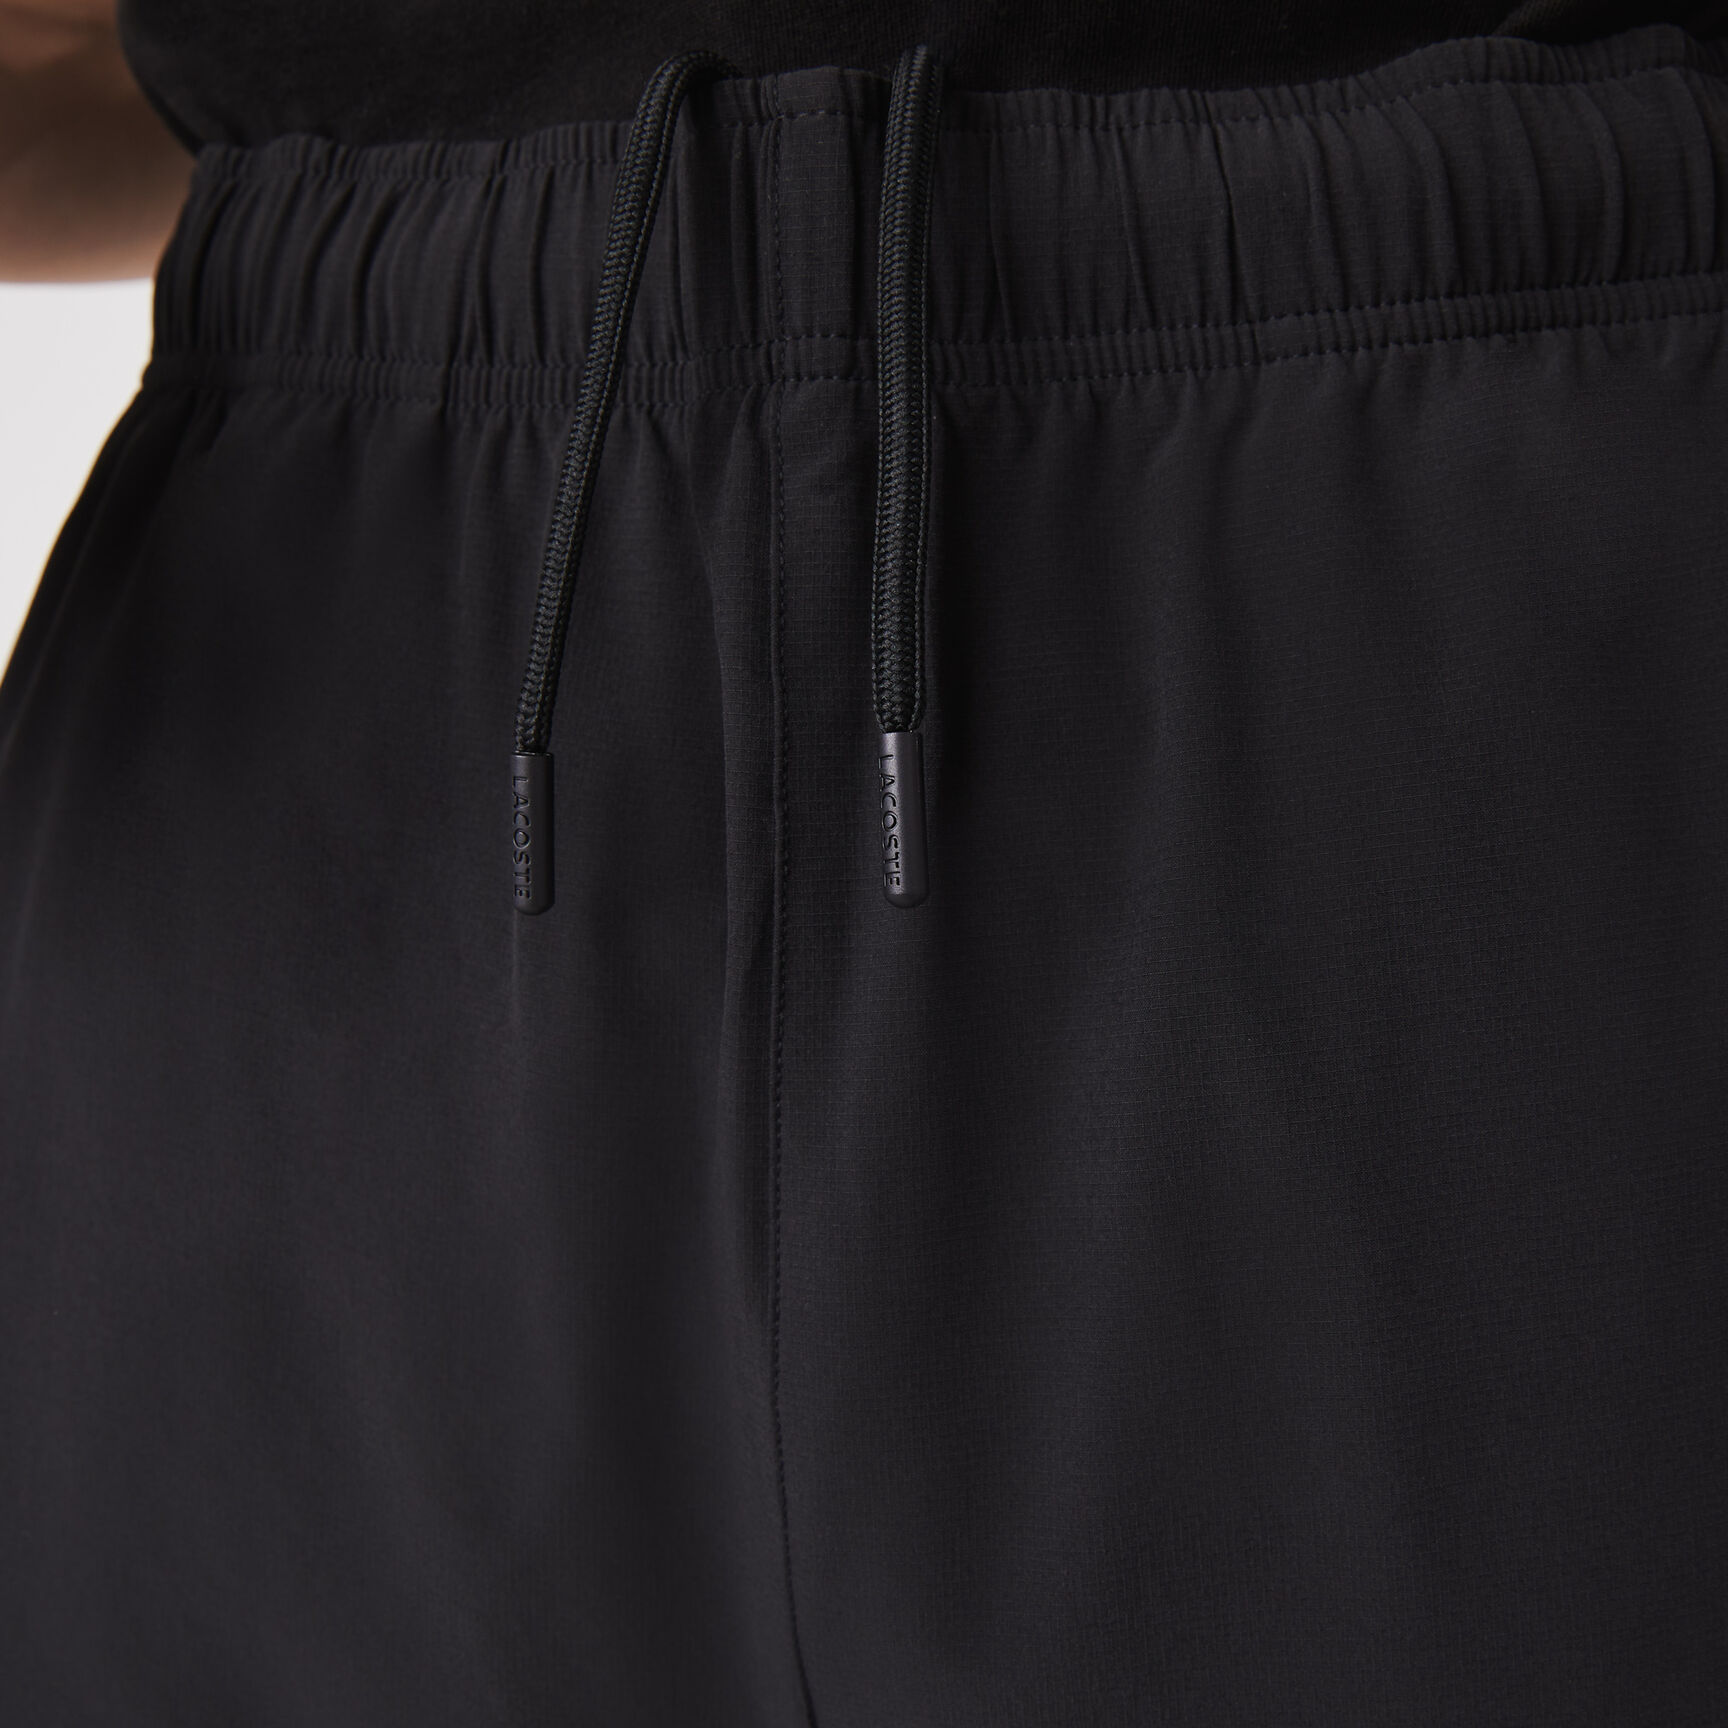 Buy Men’s Lacoste SPORT Ultra-Light Shorts | Lacoste UAE